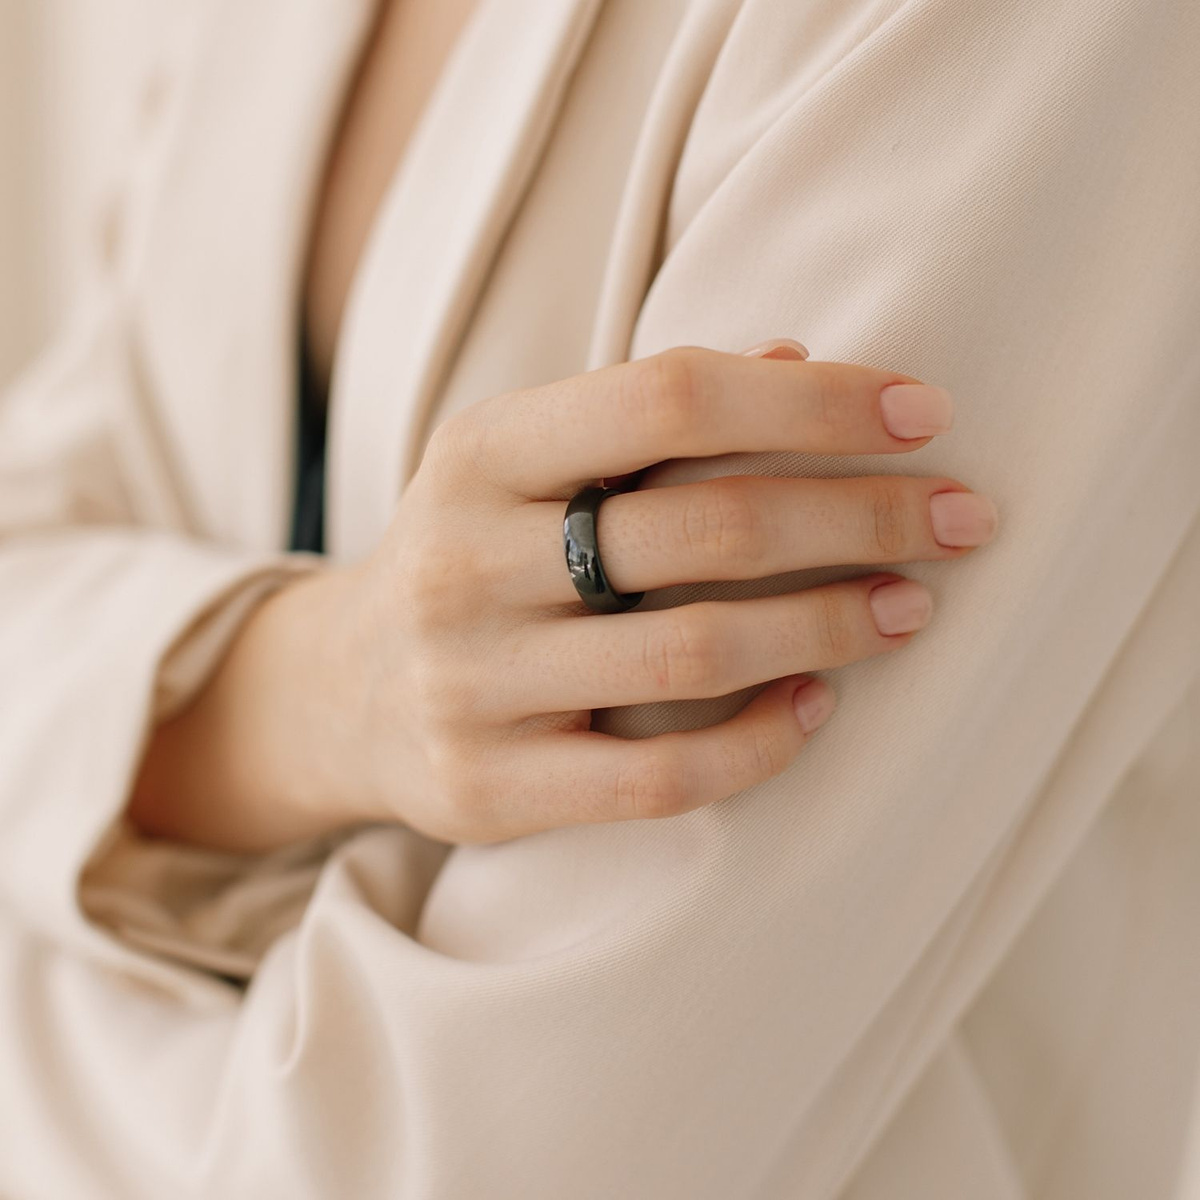 Кольцо для женщин. Керамическое черное кольцо может стать прекрасным подарком или знаком внимания на любой повод.